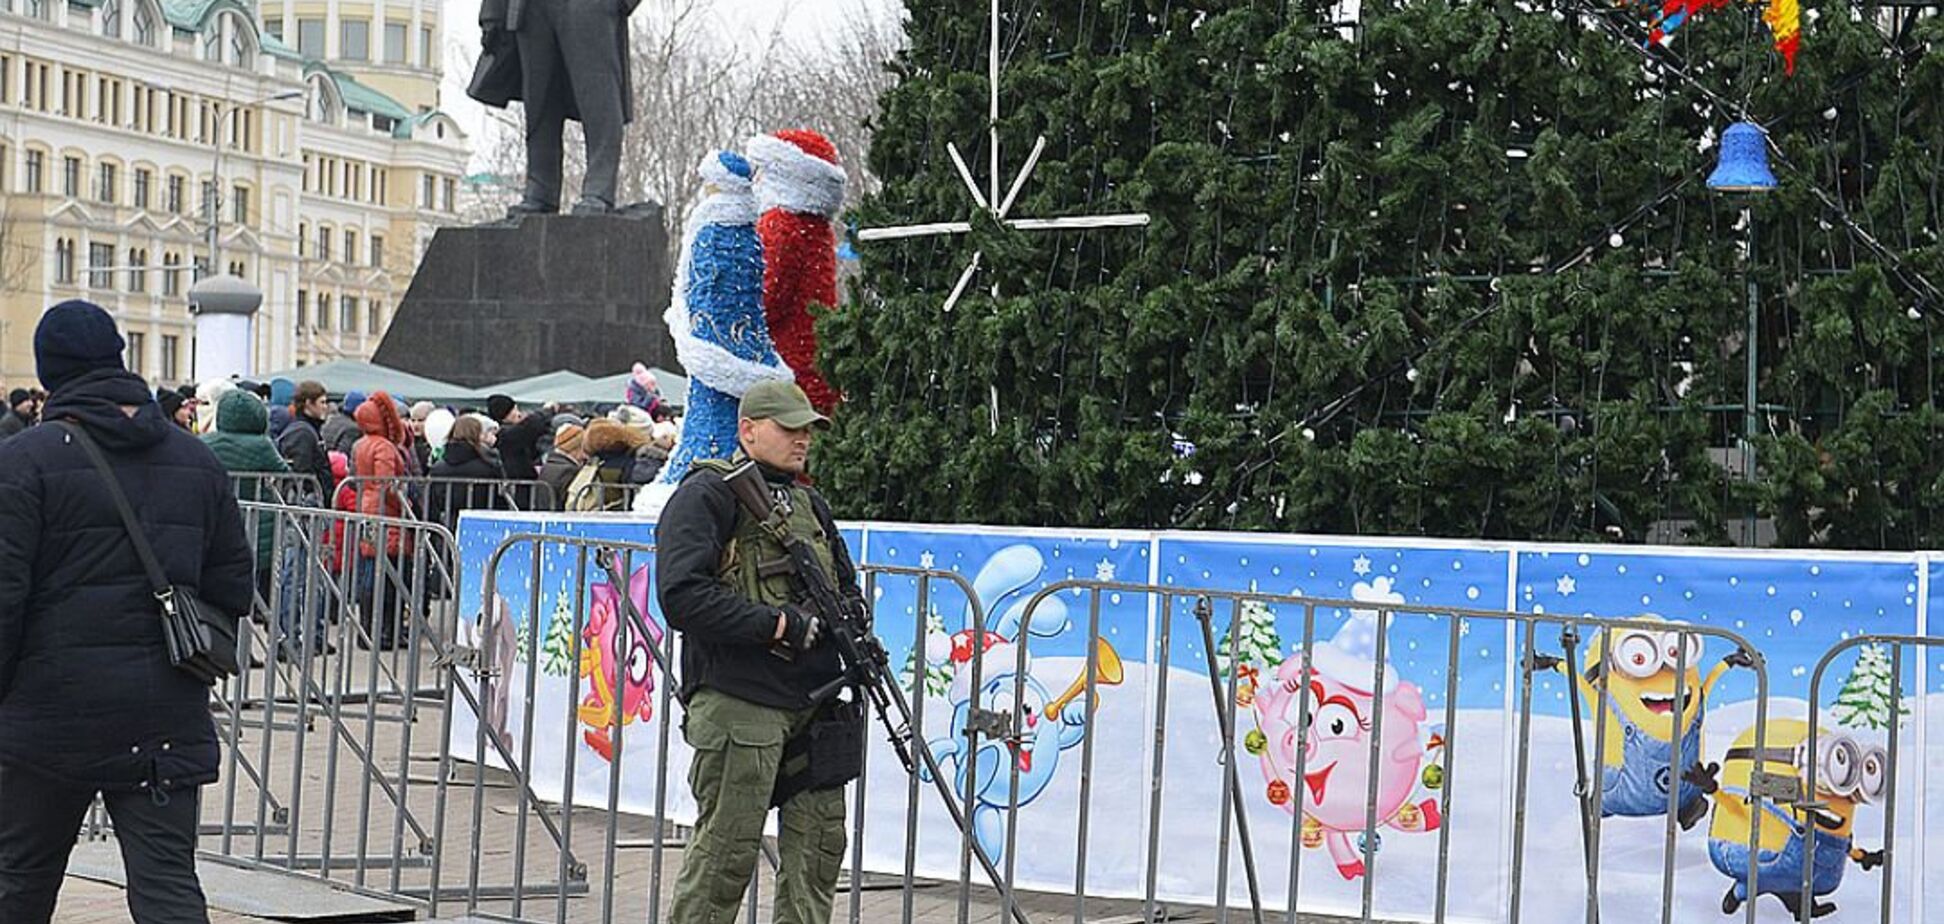 'Веселись, а то замочу': сеть повергло в шок фото новогоднего Донецка